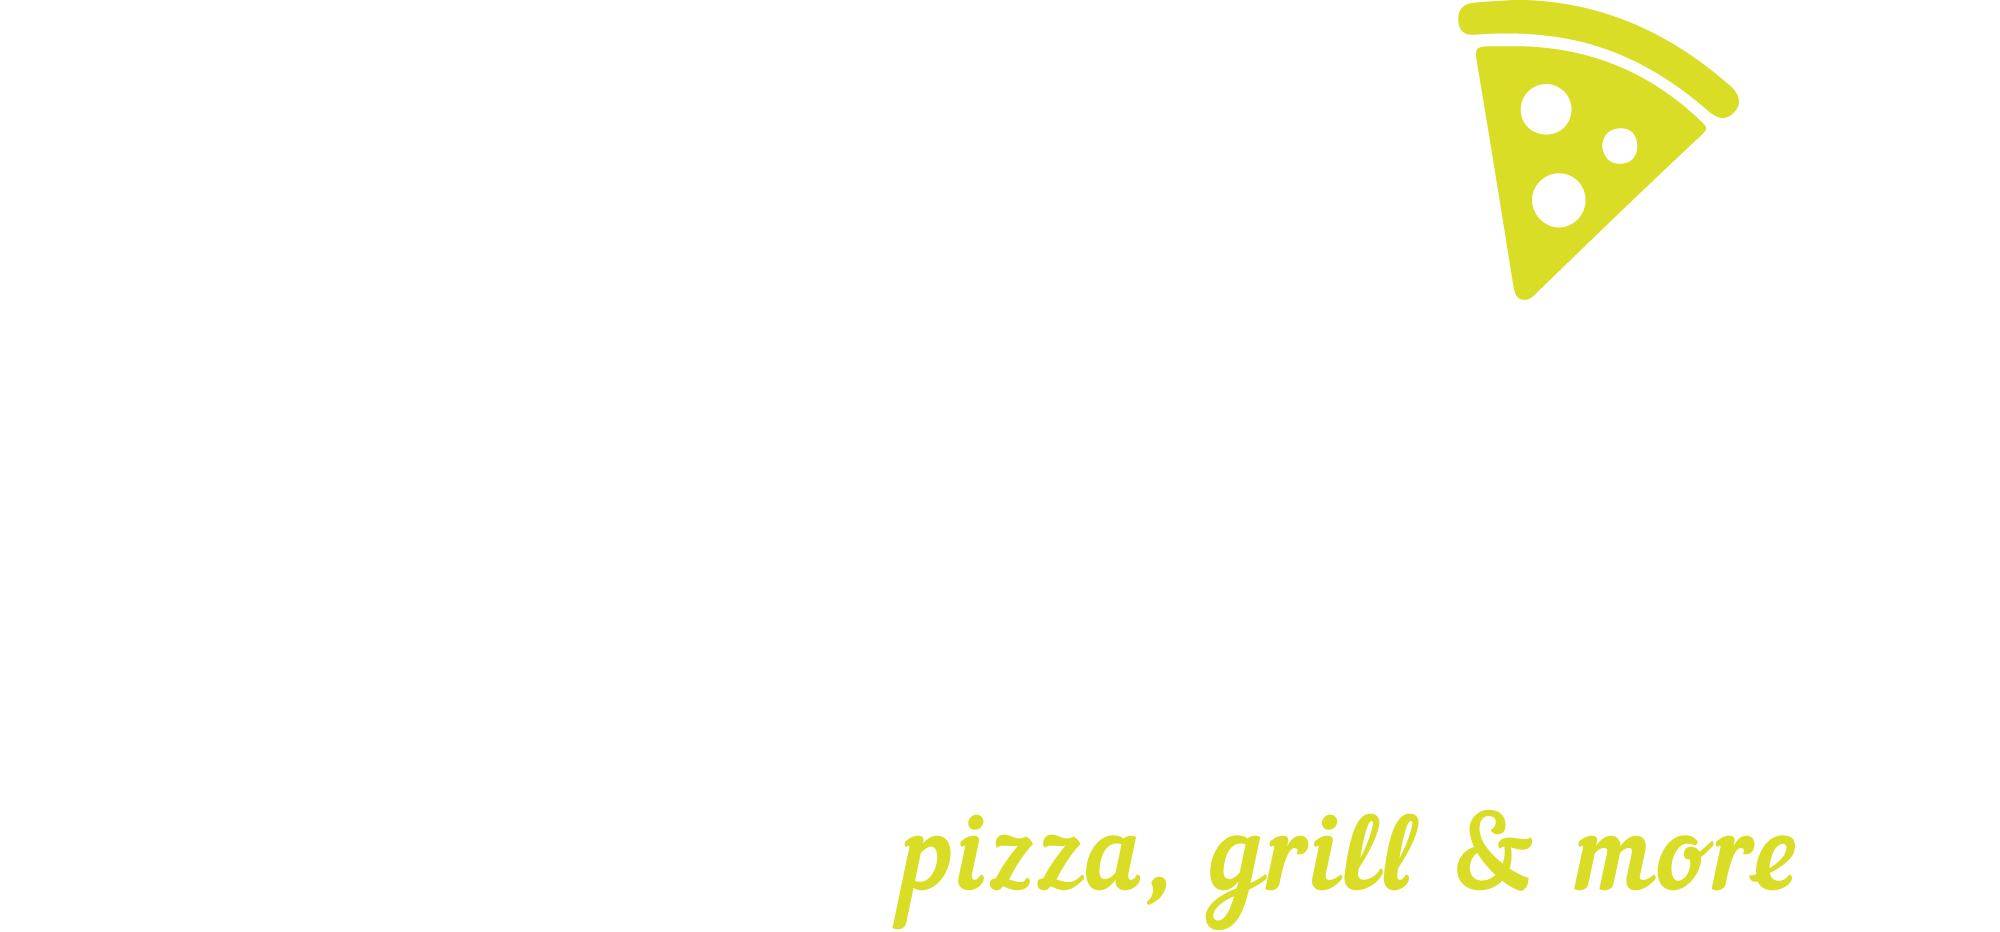 Ques Pizza Logo